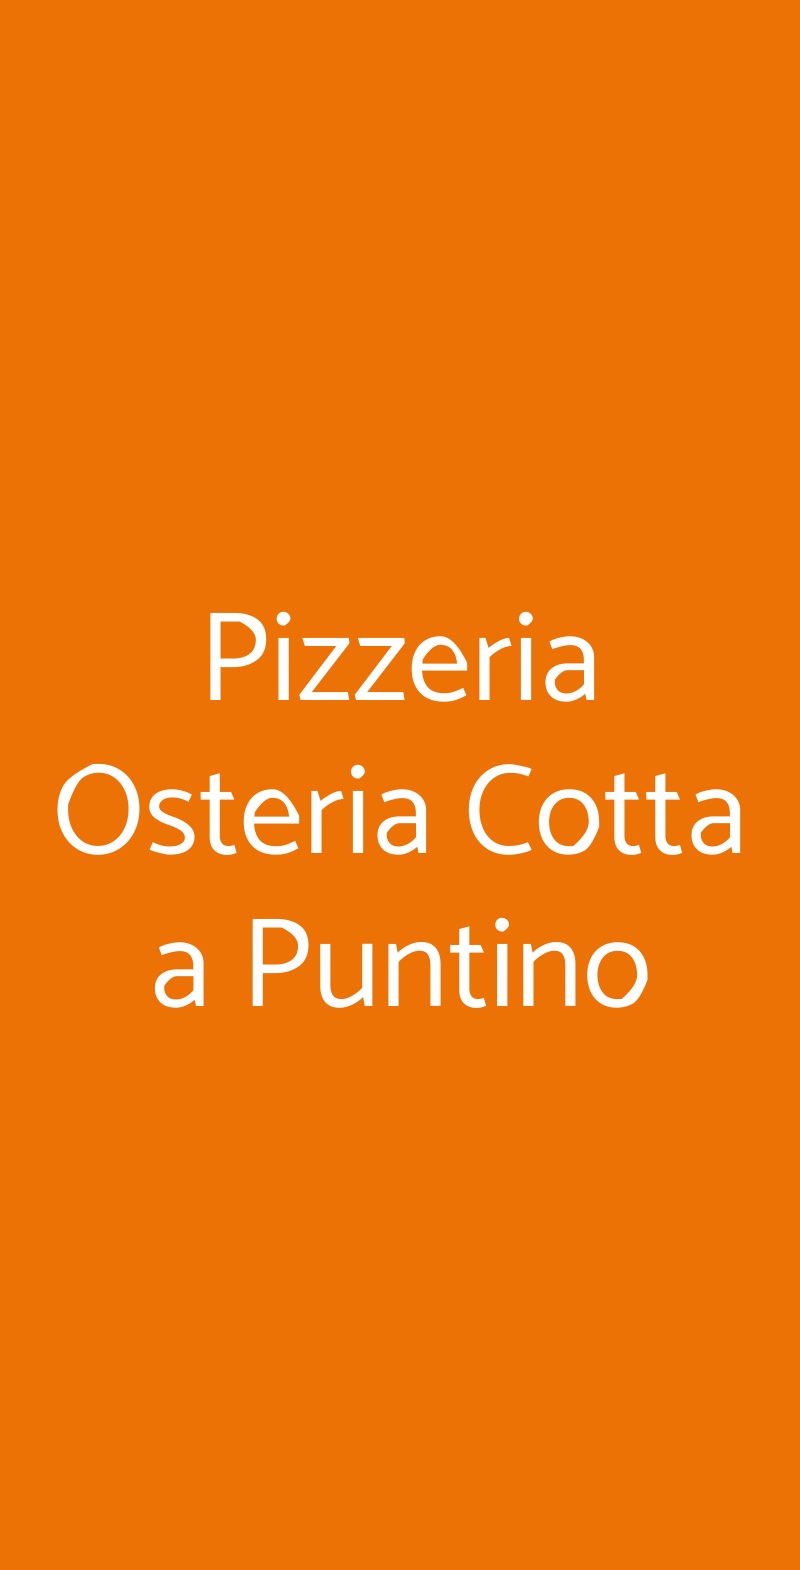 Pizzeria Osteria Cotta a Puntino Firenze menù 1 pagina